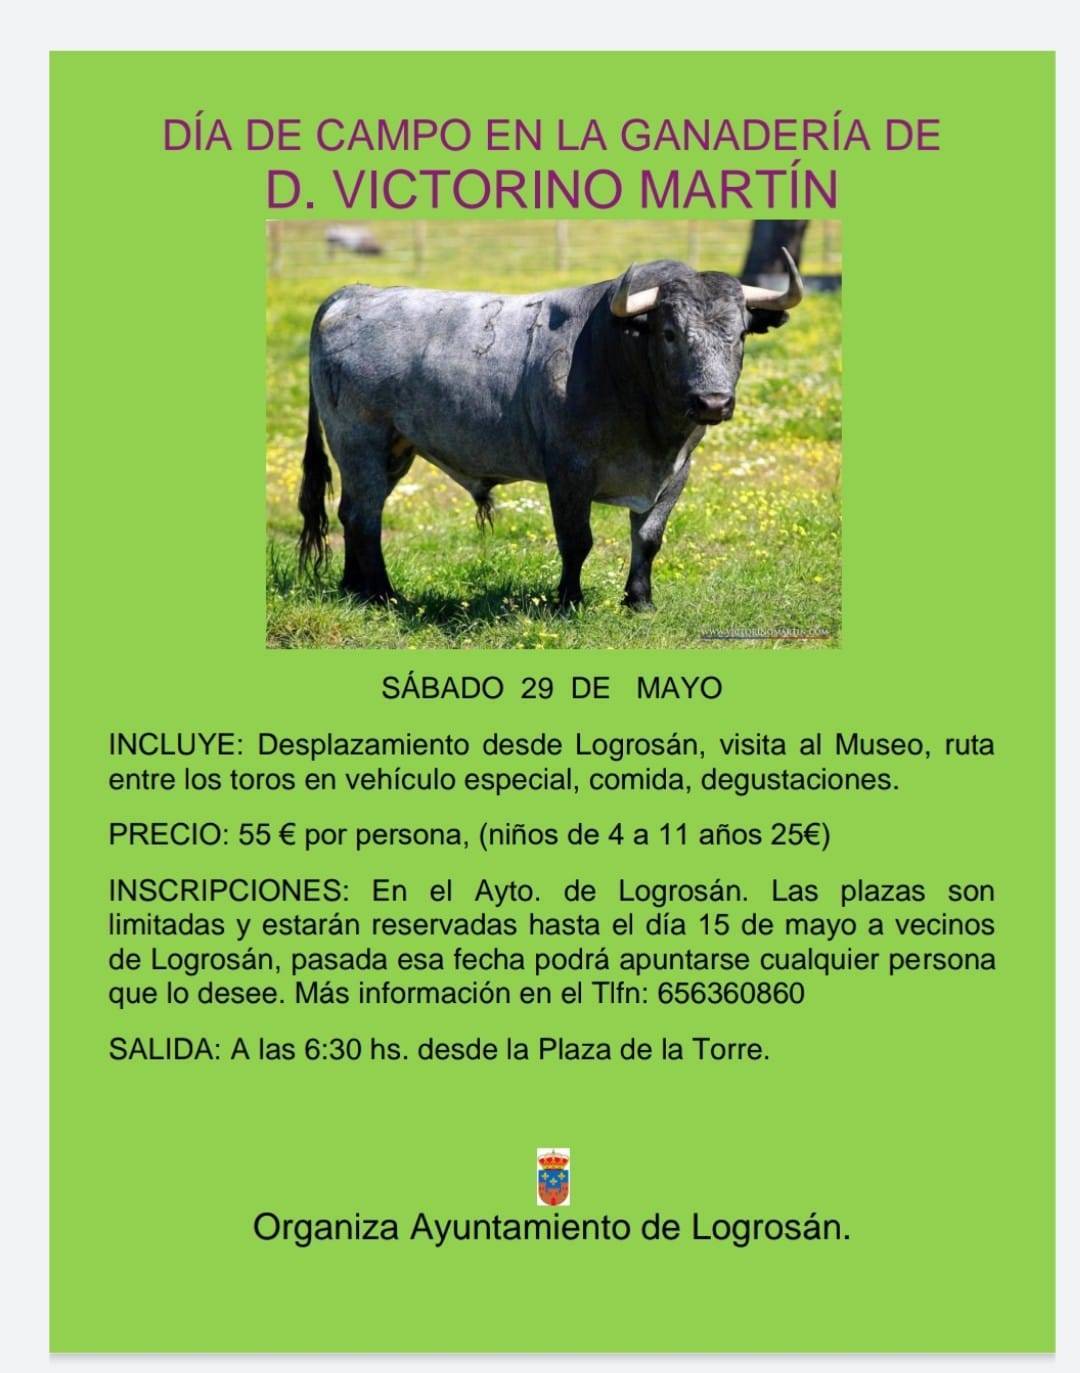 Día de campo en la ganadería de Victorino Martín (2021) - Logrosán (Cáceres)